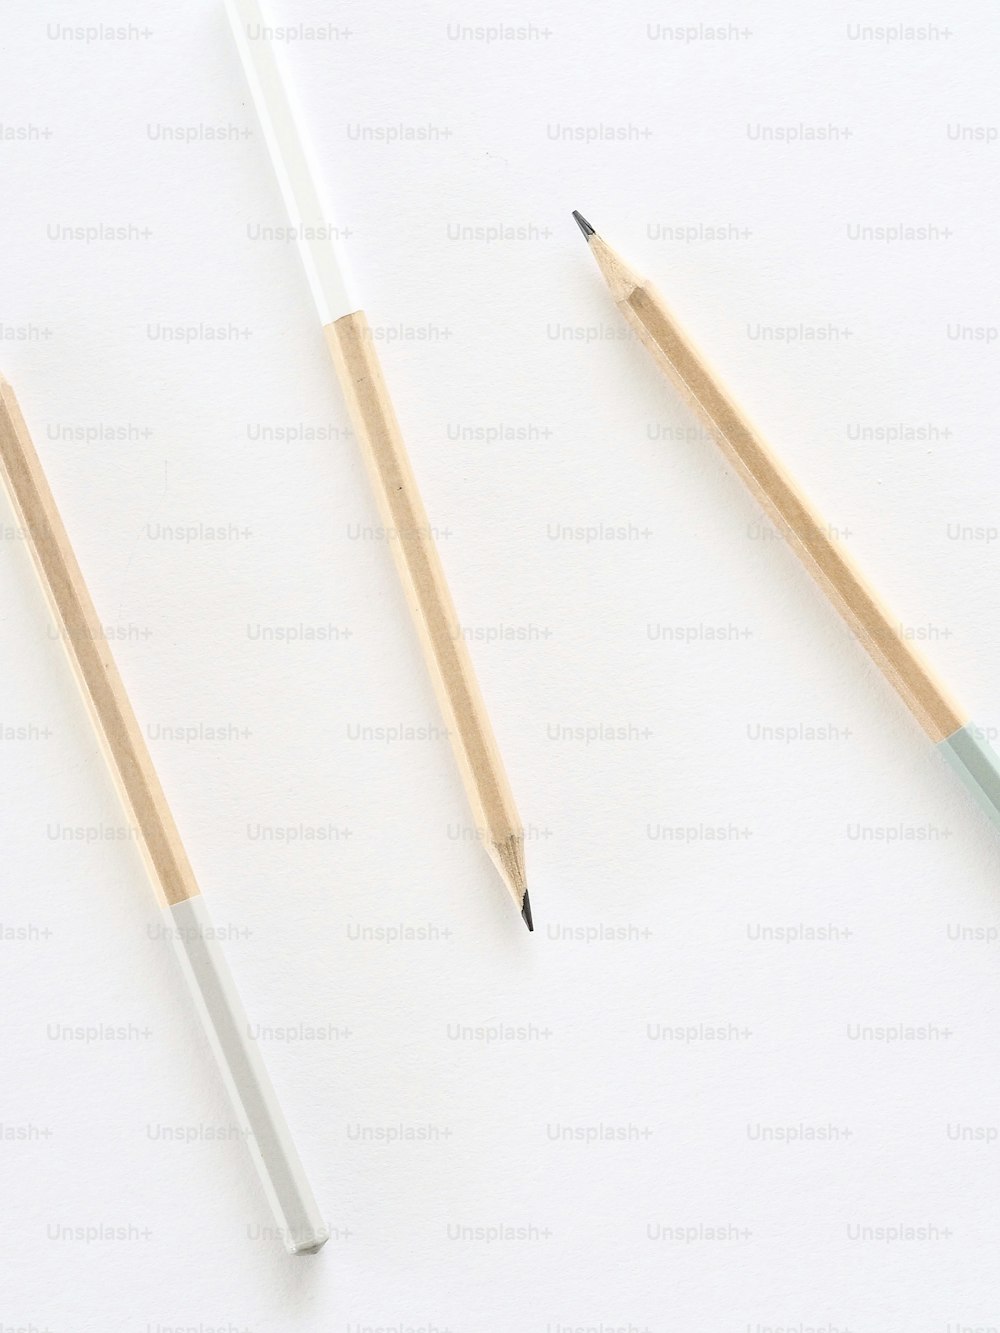 dois lápis e um apontador de lápis em uma superfície branca